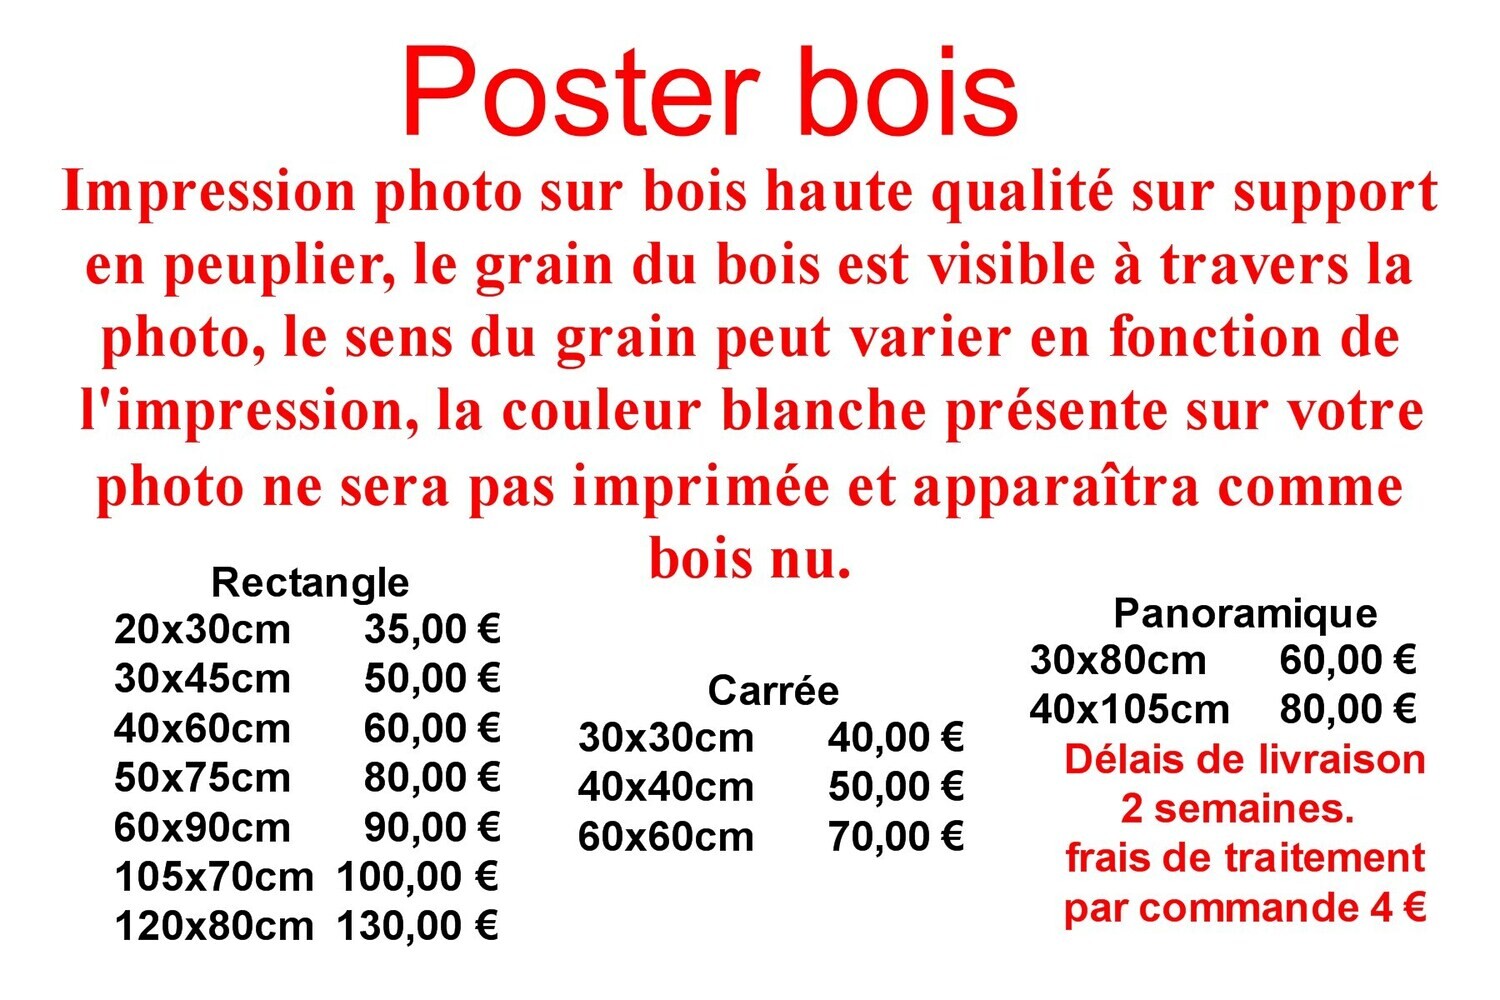 Poster bois à partir de39,00 €